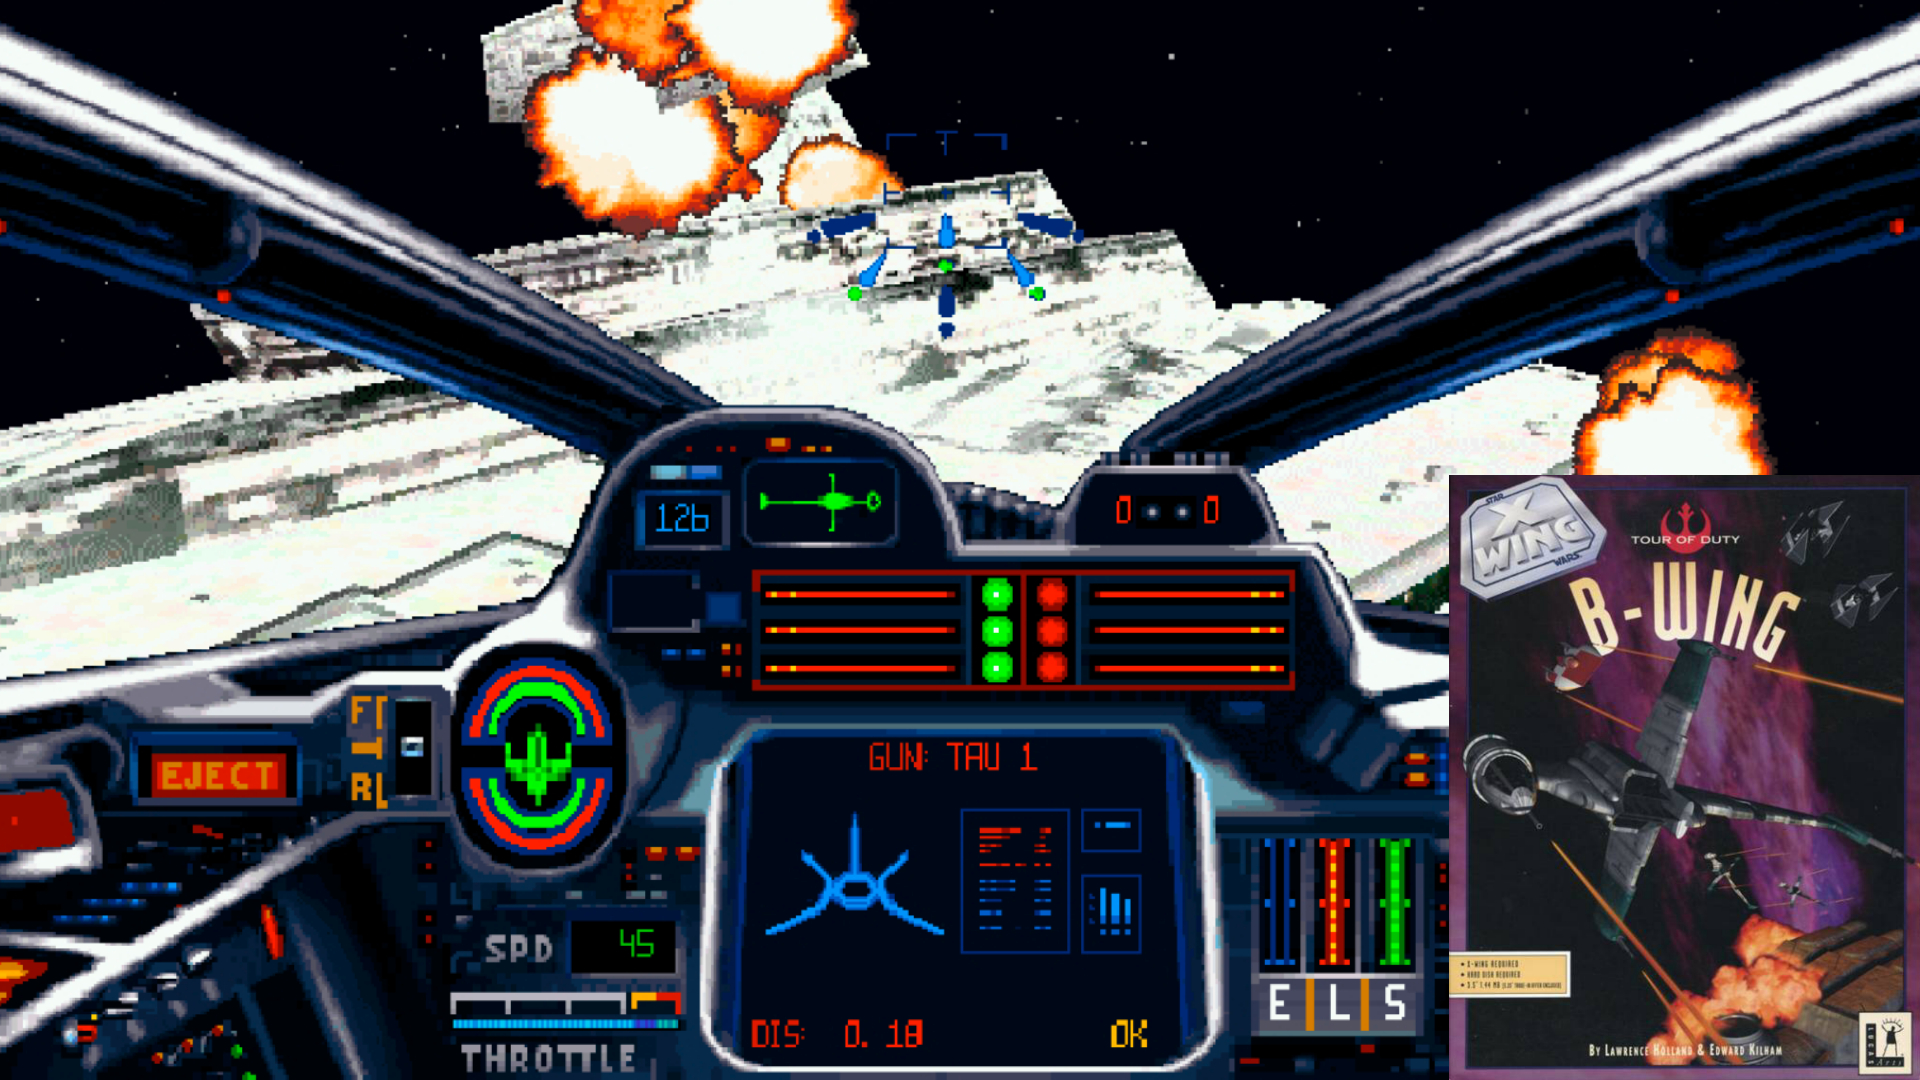 X-Wing, der große Konkurrent der Wing Commander-Reihe aus dem Hause LucasArts, setzte auf CPU- und Speicher-freundliche, ausgefüllte Polygon-Grafik. Vom 286er bis 486er konnte jeder PC User das spannende Weltraumepos spielen. Die Mission Disk B-Wing spendiert den Rebellen-Piloten den titelgebenden, schwer gepanzerten Bomber. Harte Zeiten für Sternenzerstörer. Und Studienabschlüsse. (Bild: EA)